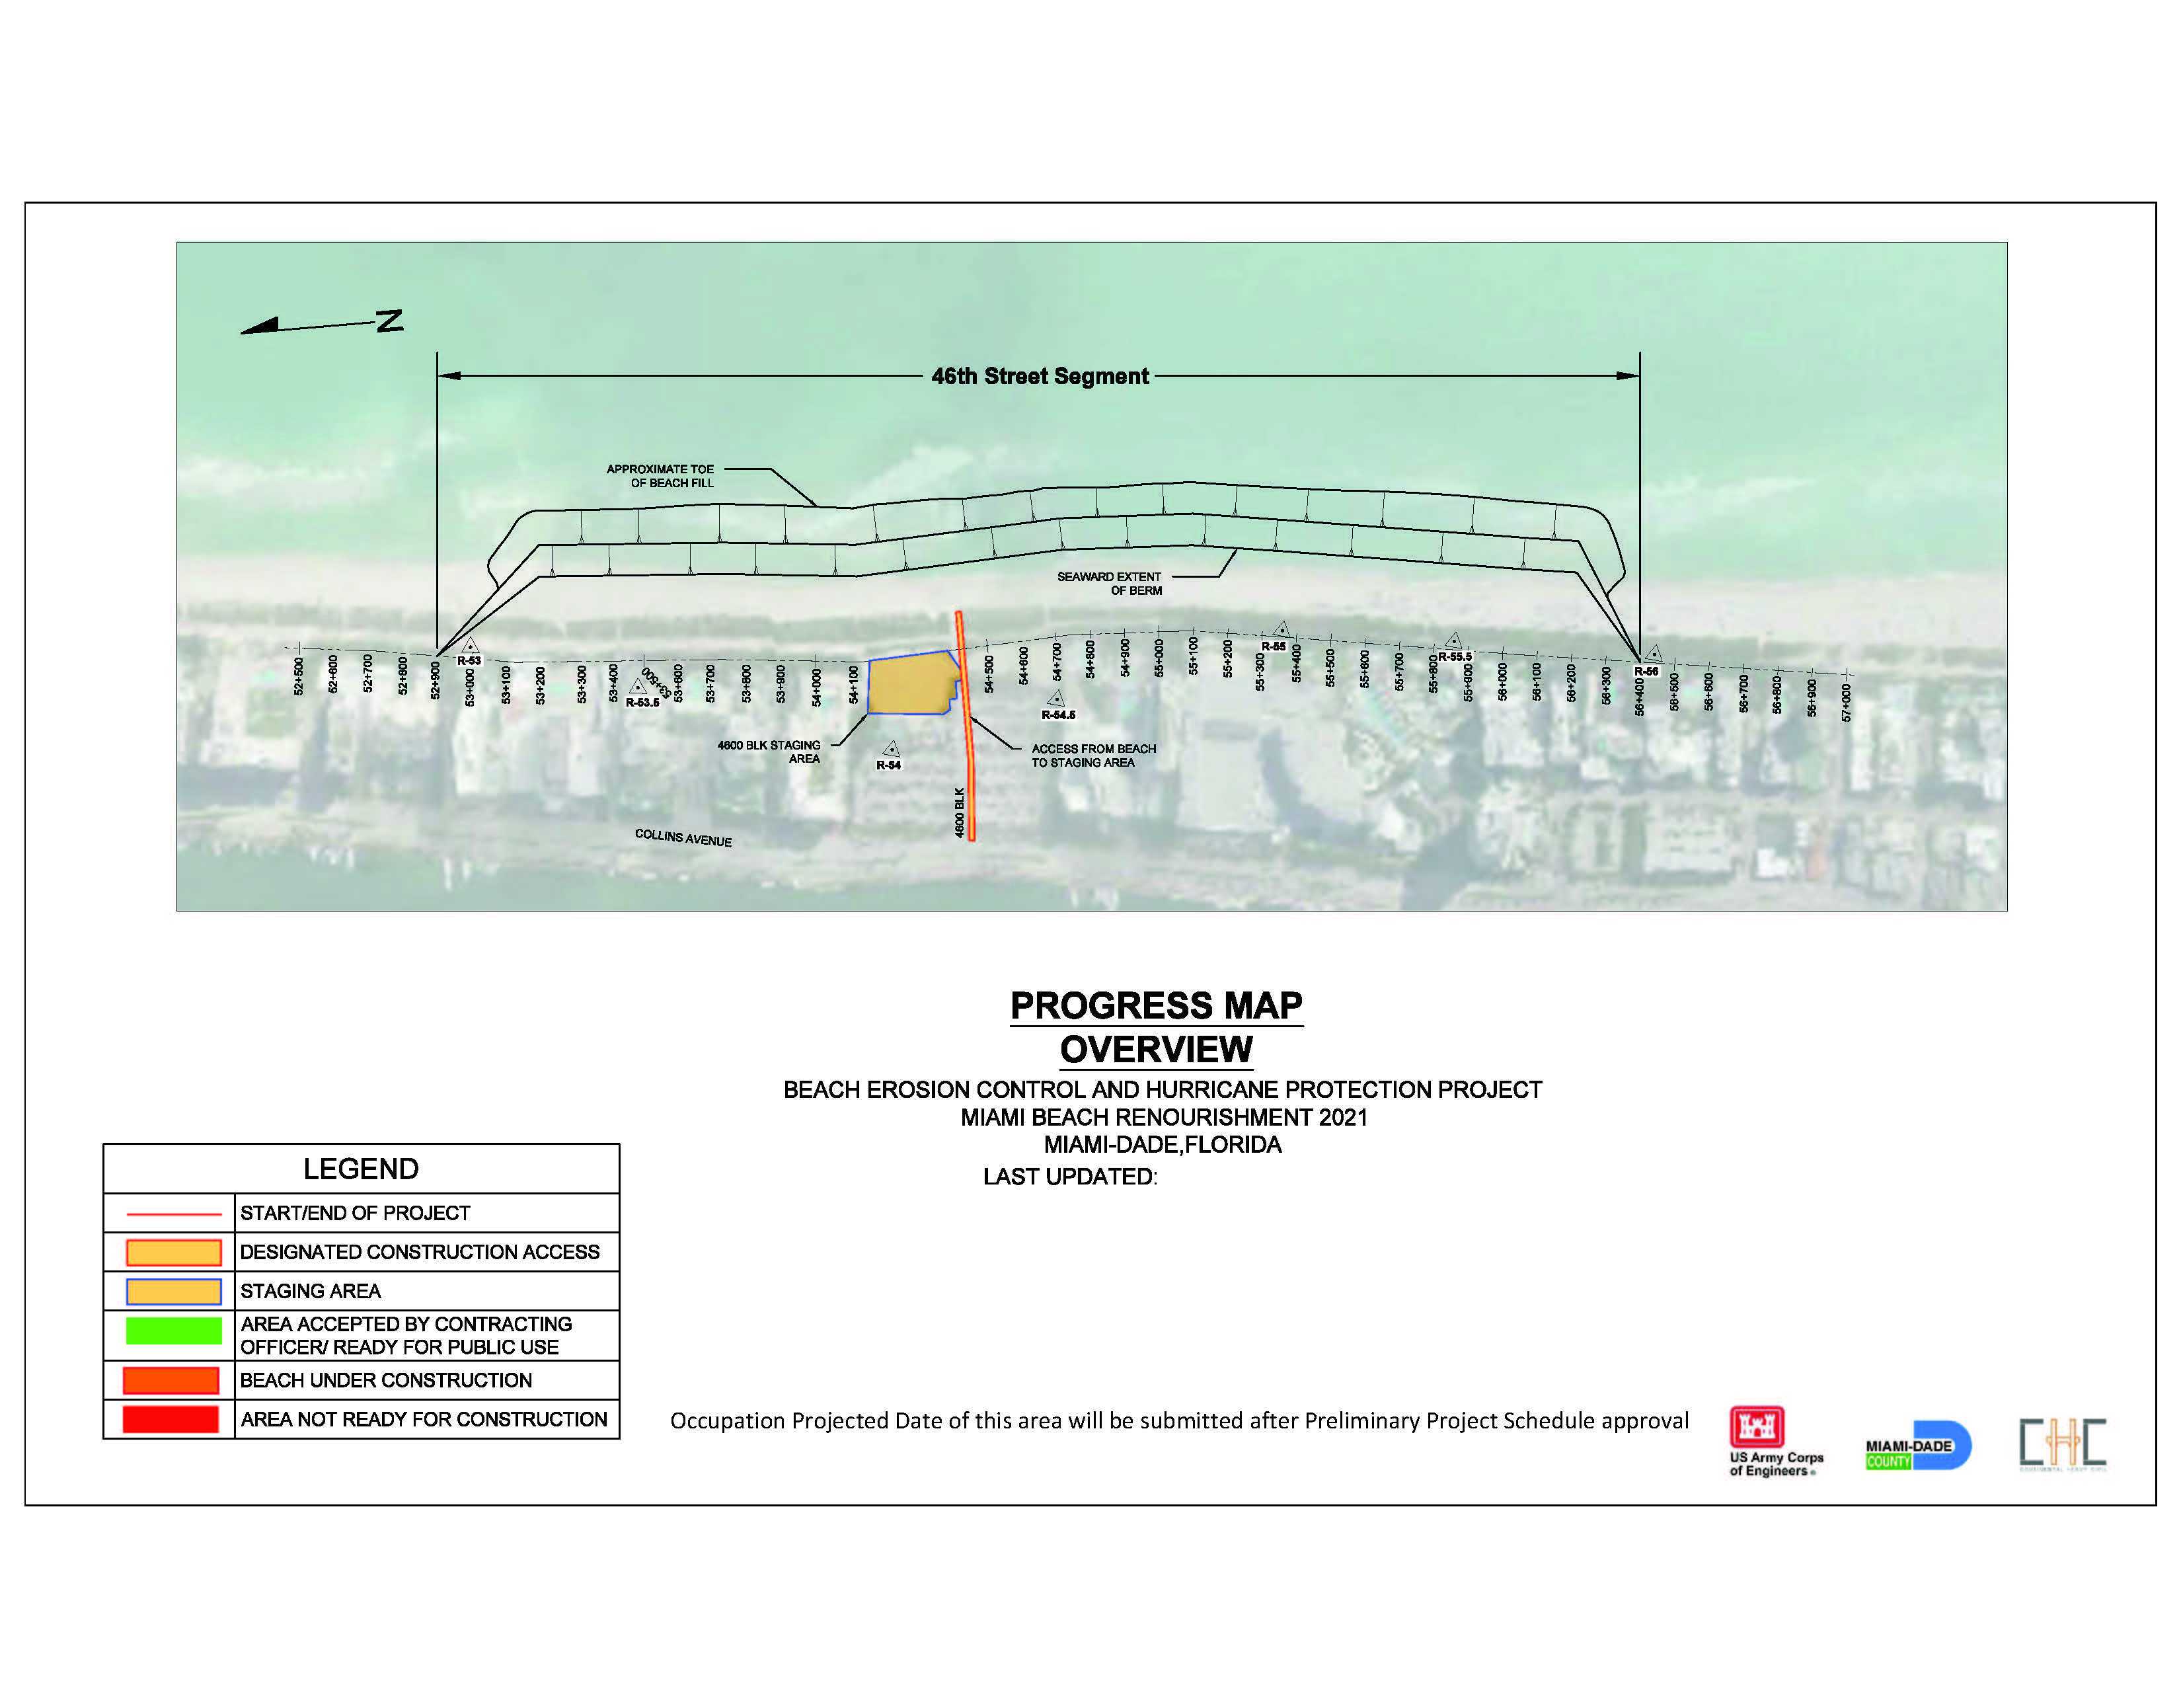 Map showing the 2021 Miami Beach Renourishment Project 46th Street Segment